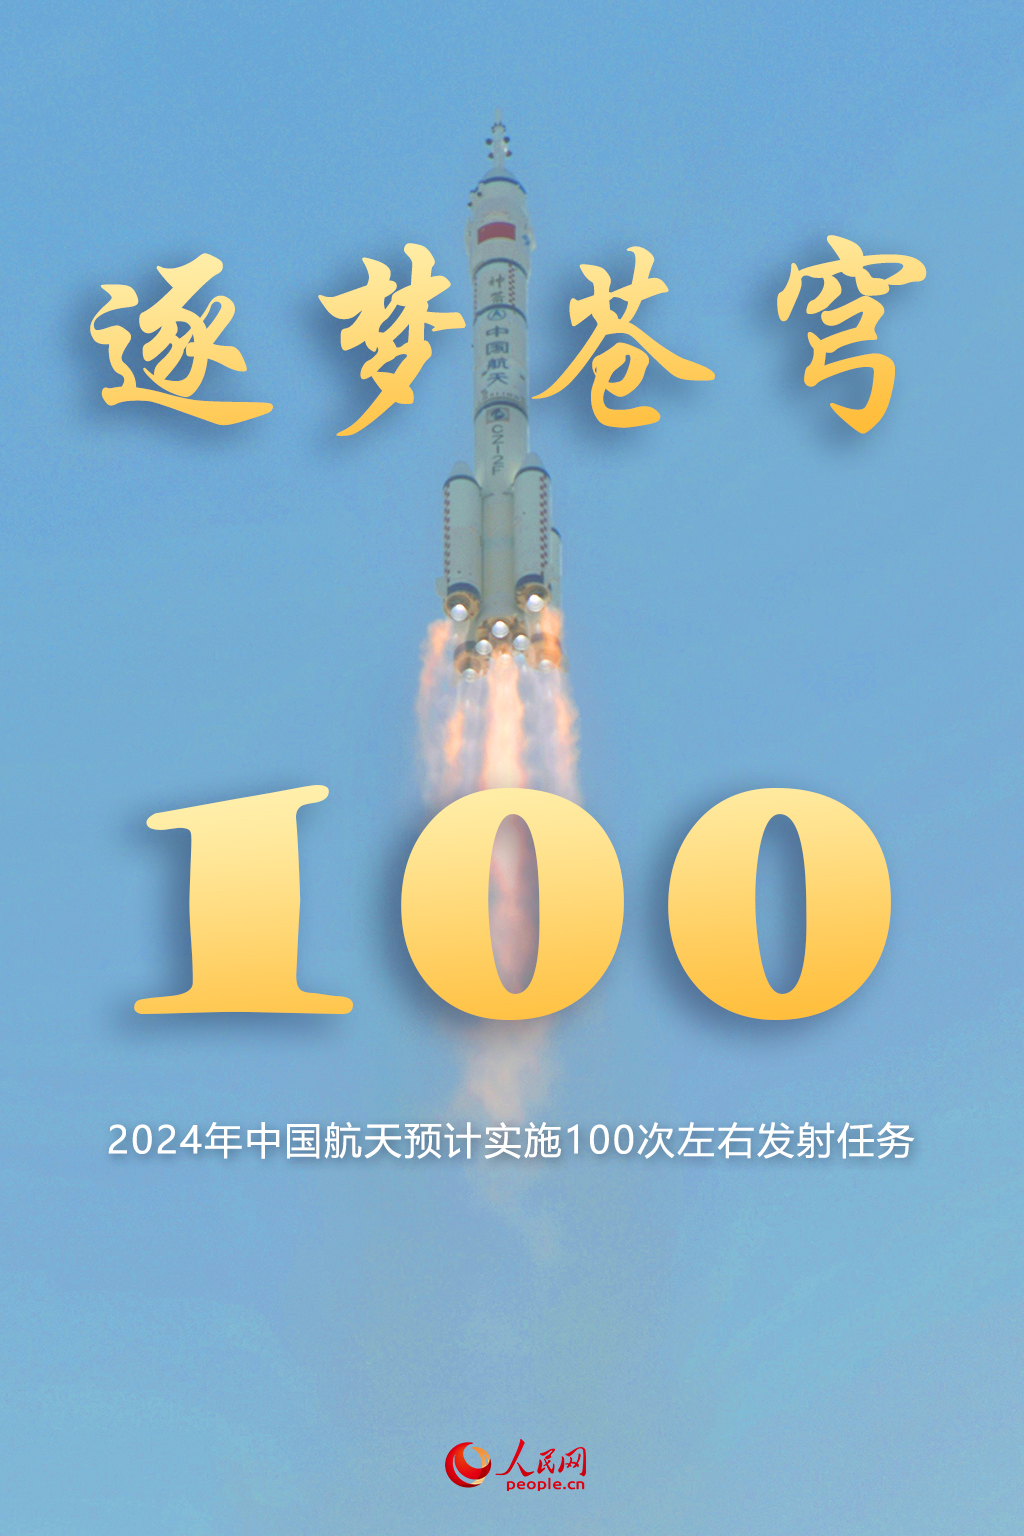 ​2024年中国航天预计实施100次左右发射任务